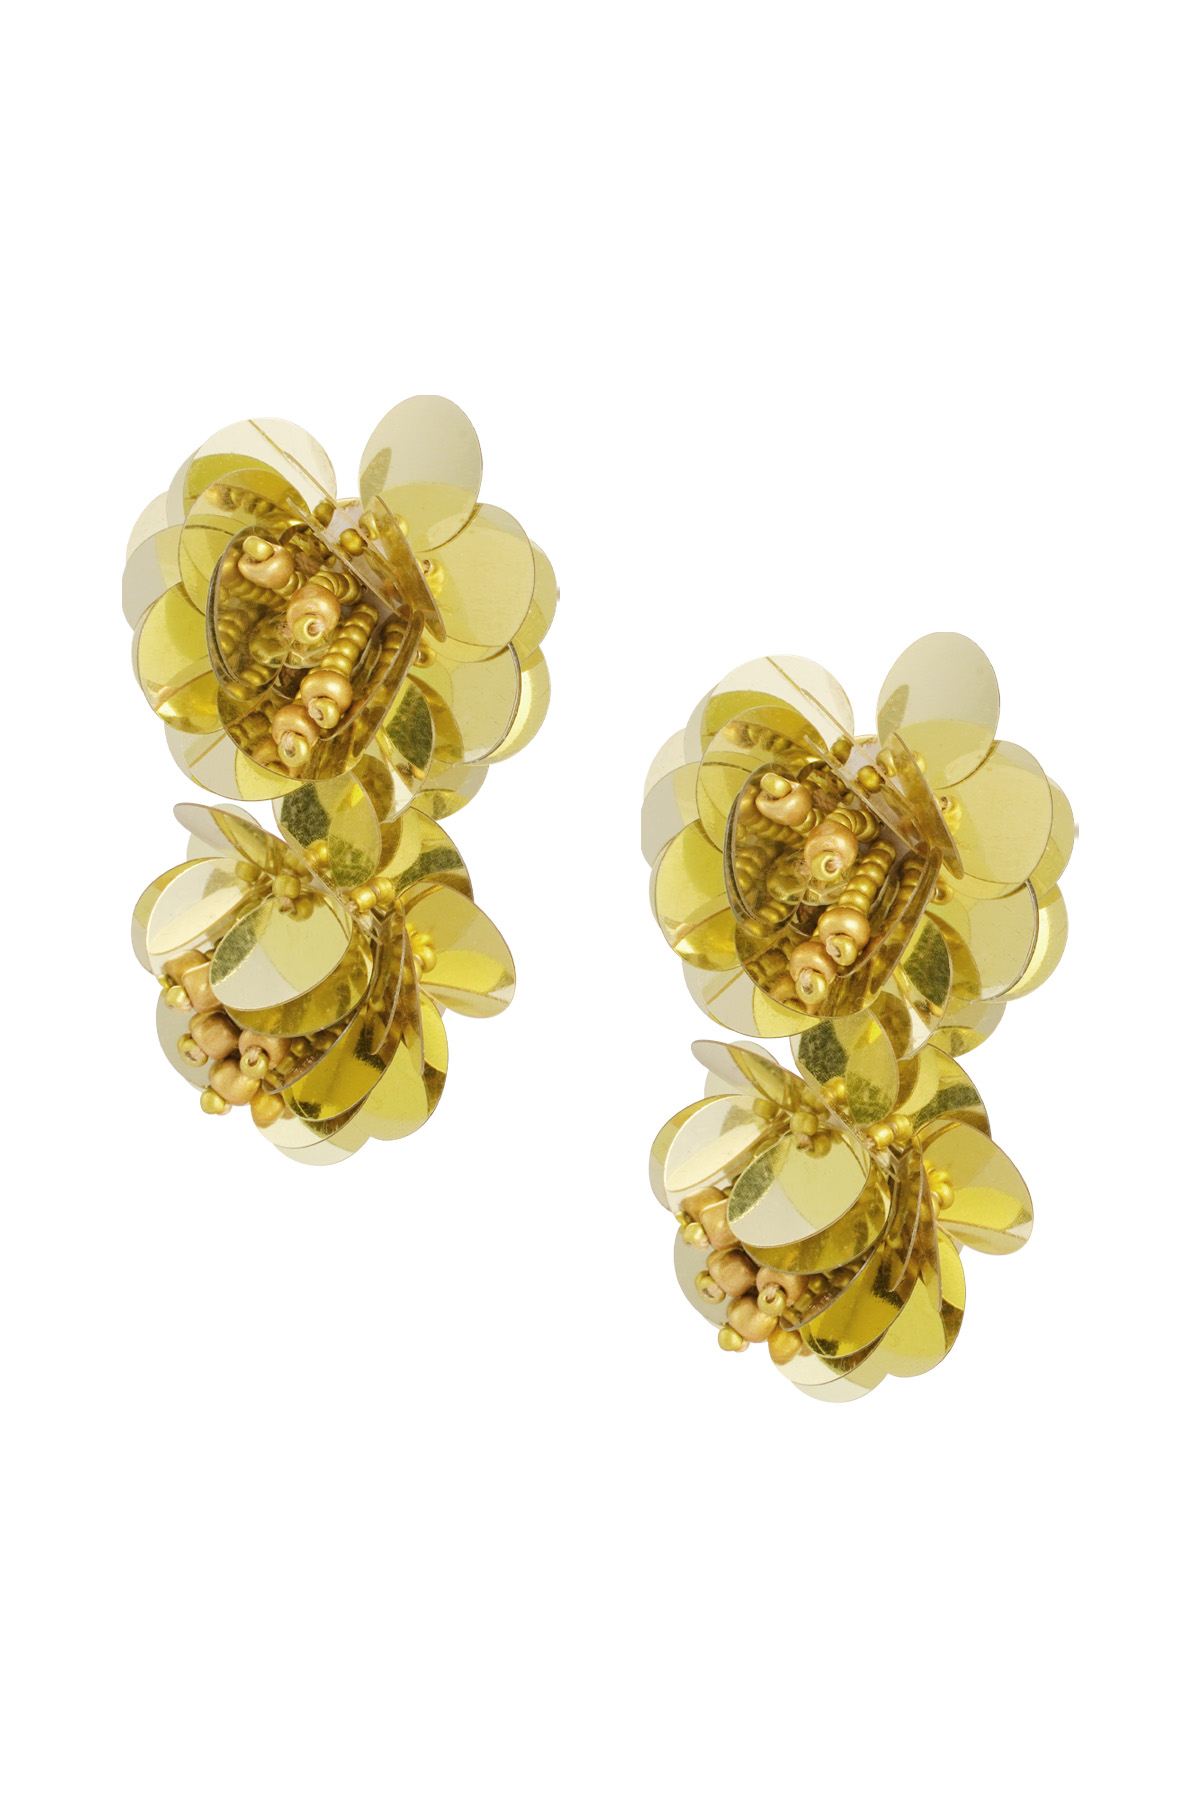 Earrings rose spirit - gold